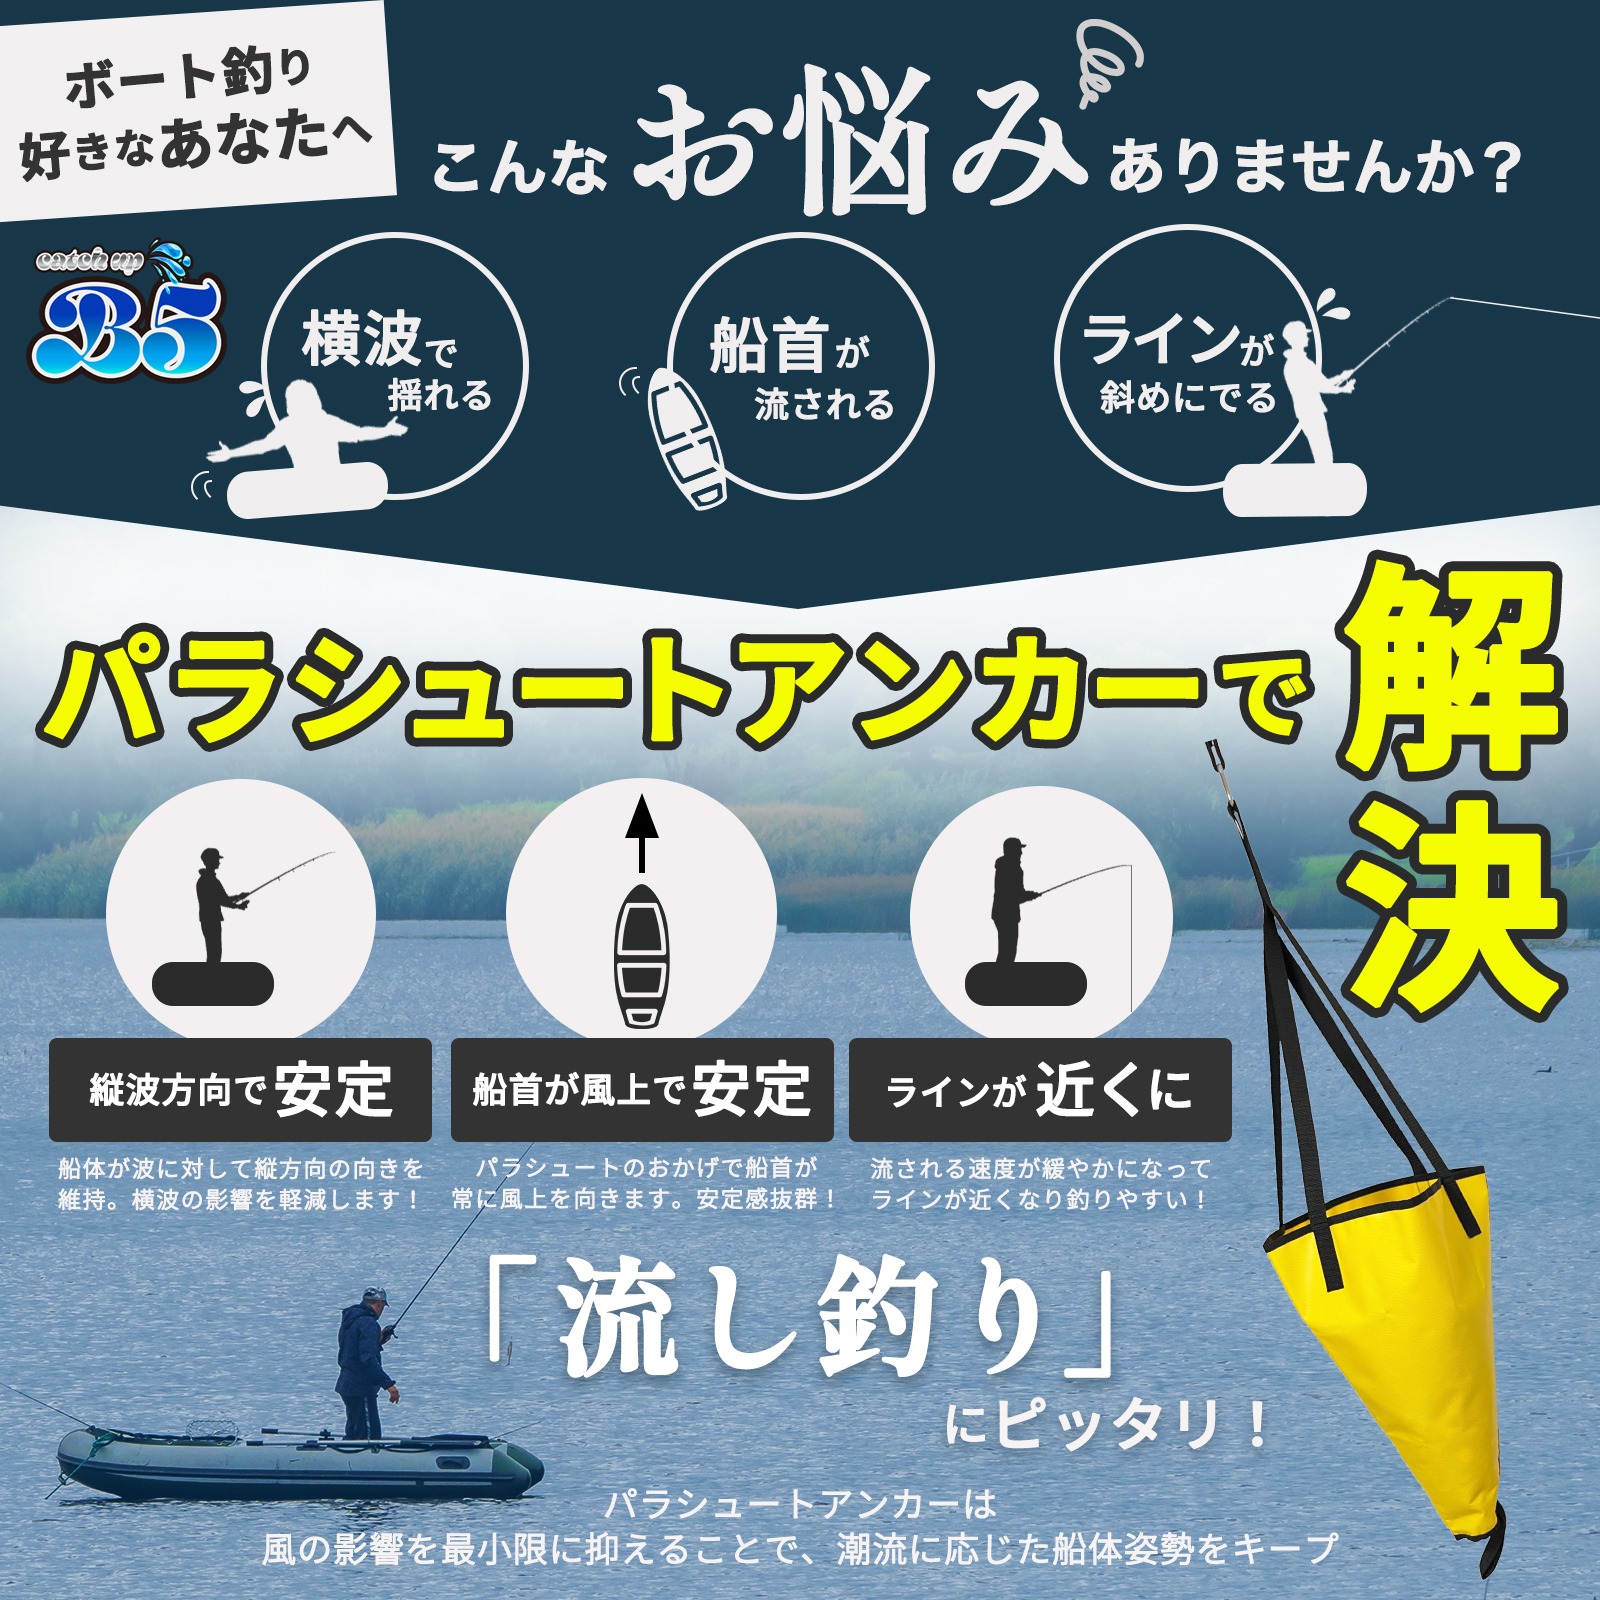 B5(ビーファイブ）シーアンカーセット 選べる同価格異2サイズ 日本語取付 パラシュートアンカー 流し釣り カヤック sup サップ ゴムボート  ミニボート